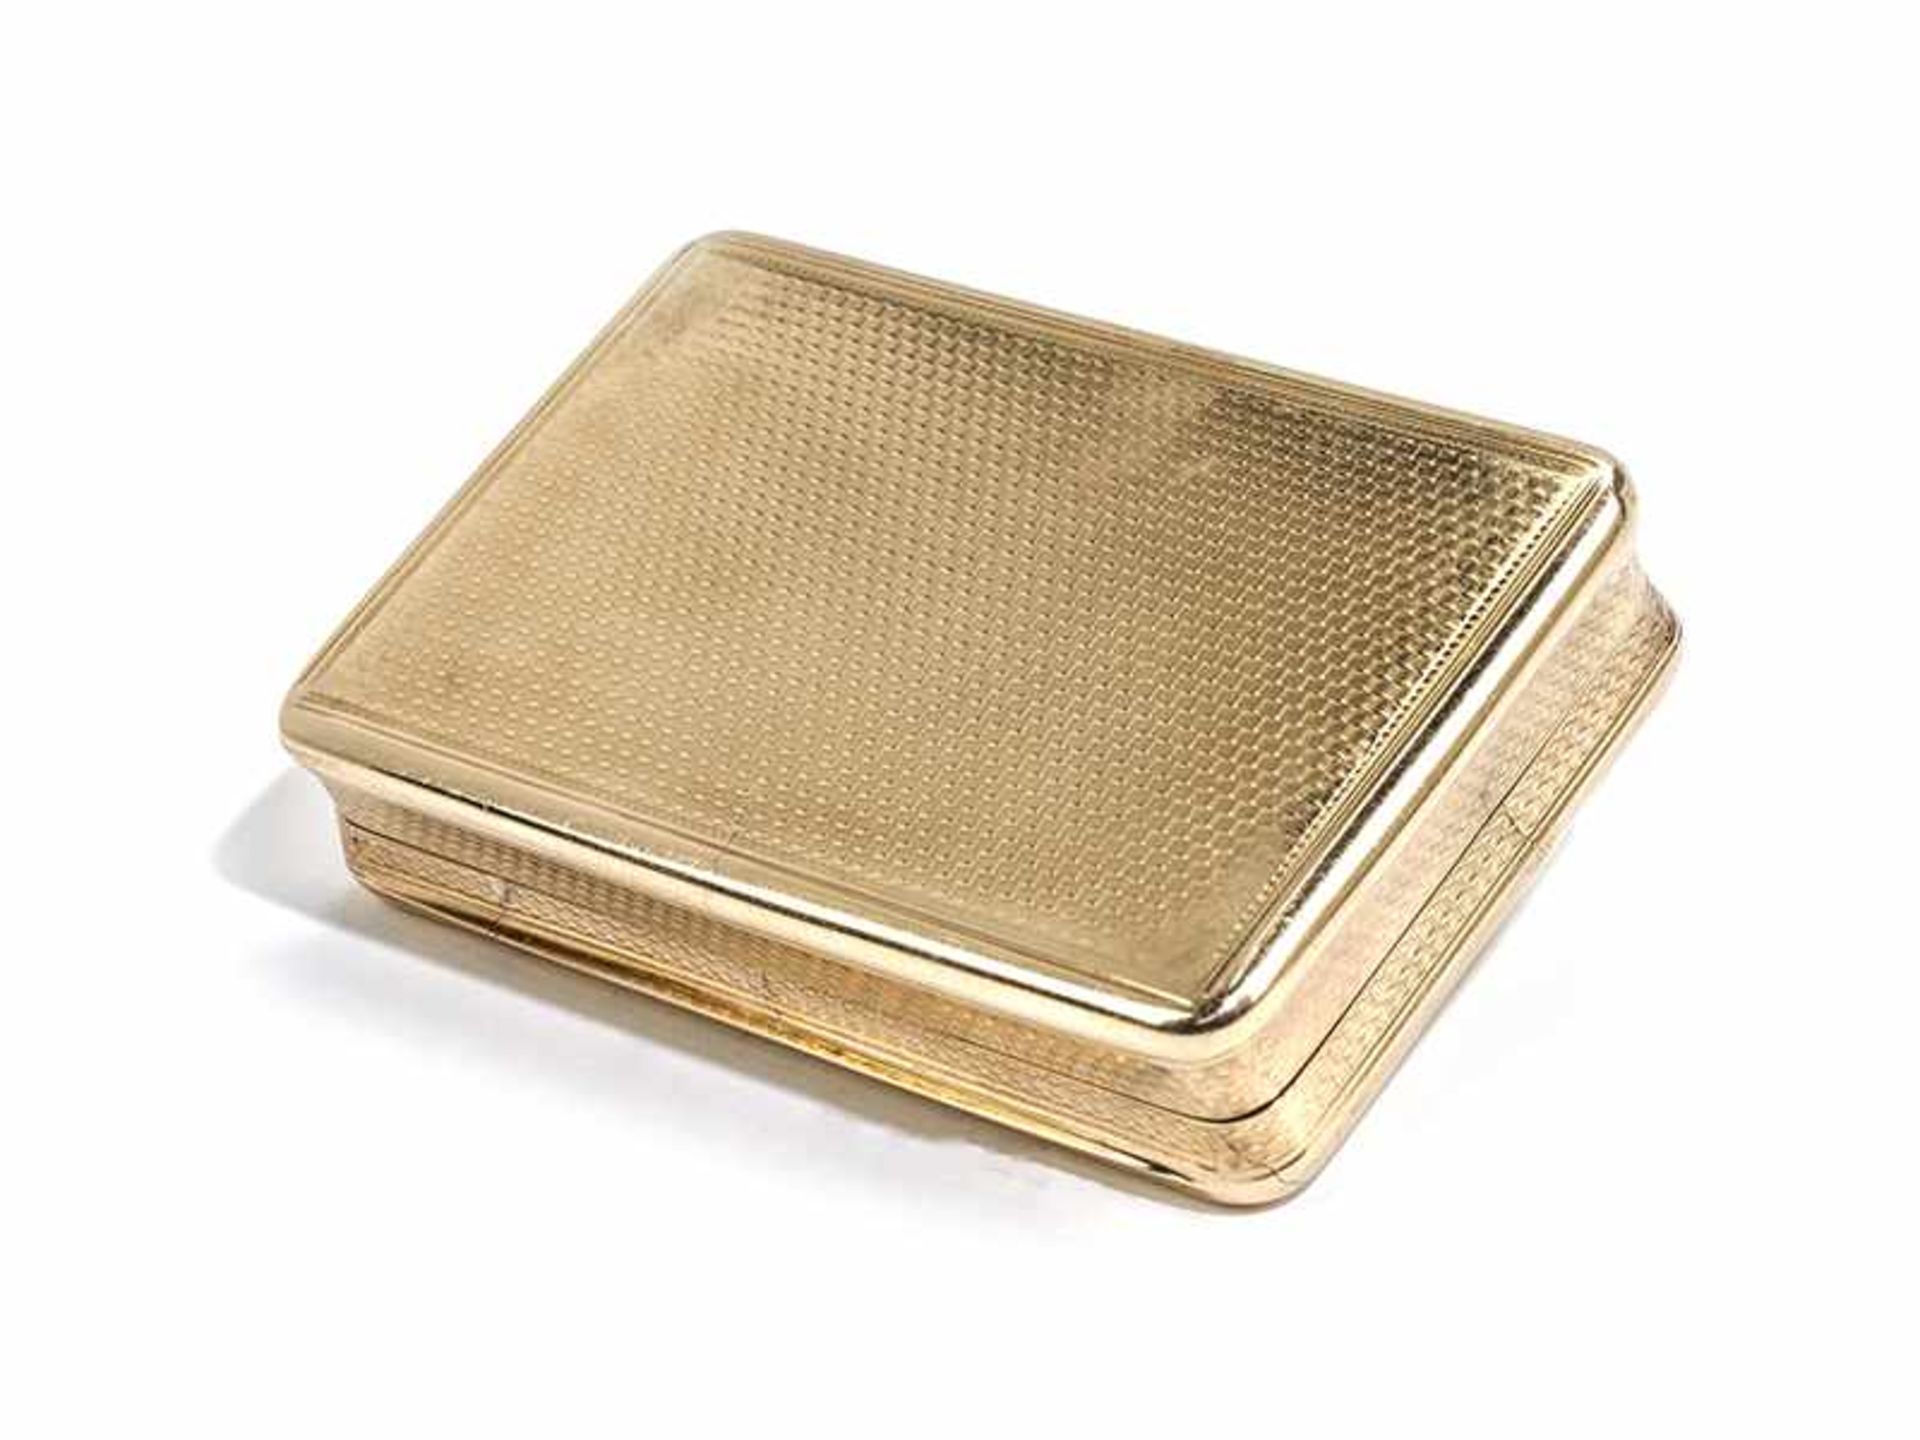 Londoner Golddose 1,8 x 8 x 5,3 cm. Gewicht: 114 g. Boden und Deckel punziert: Londoner Beschau - Bild 3 aus 7